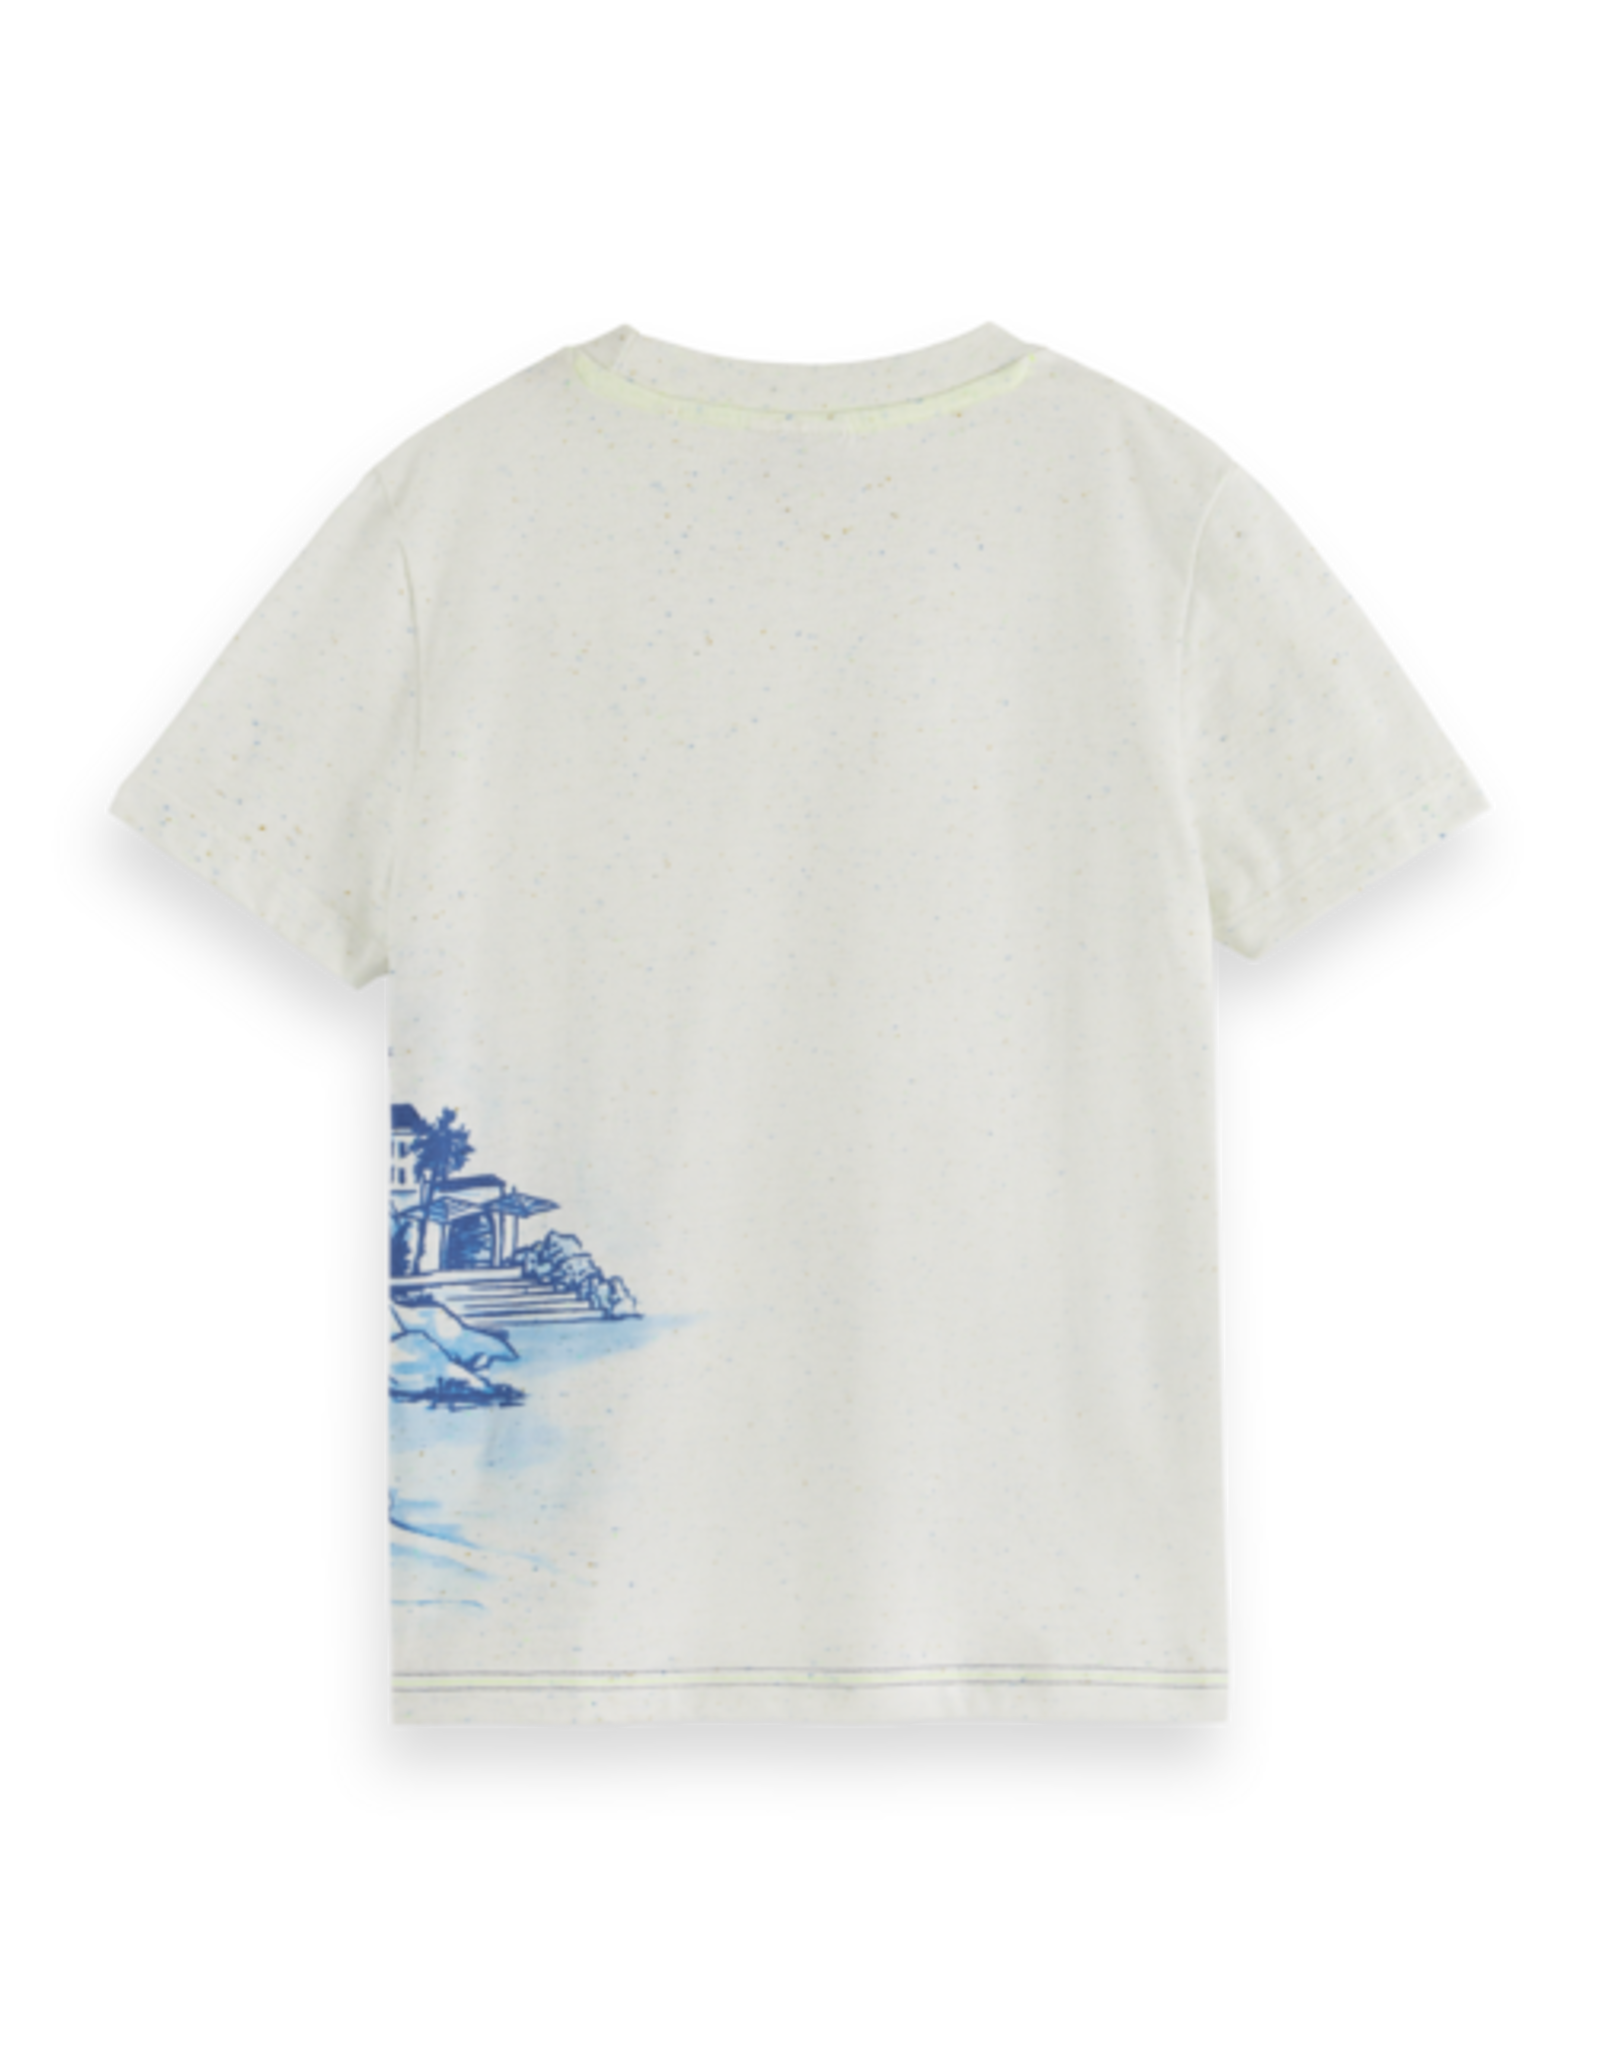 SCOTCH & SODA SCOTCH & SODA T-shirt wit met blauwe print